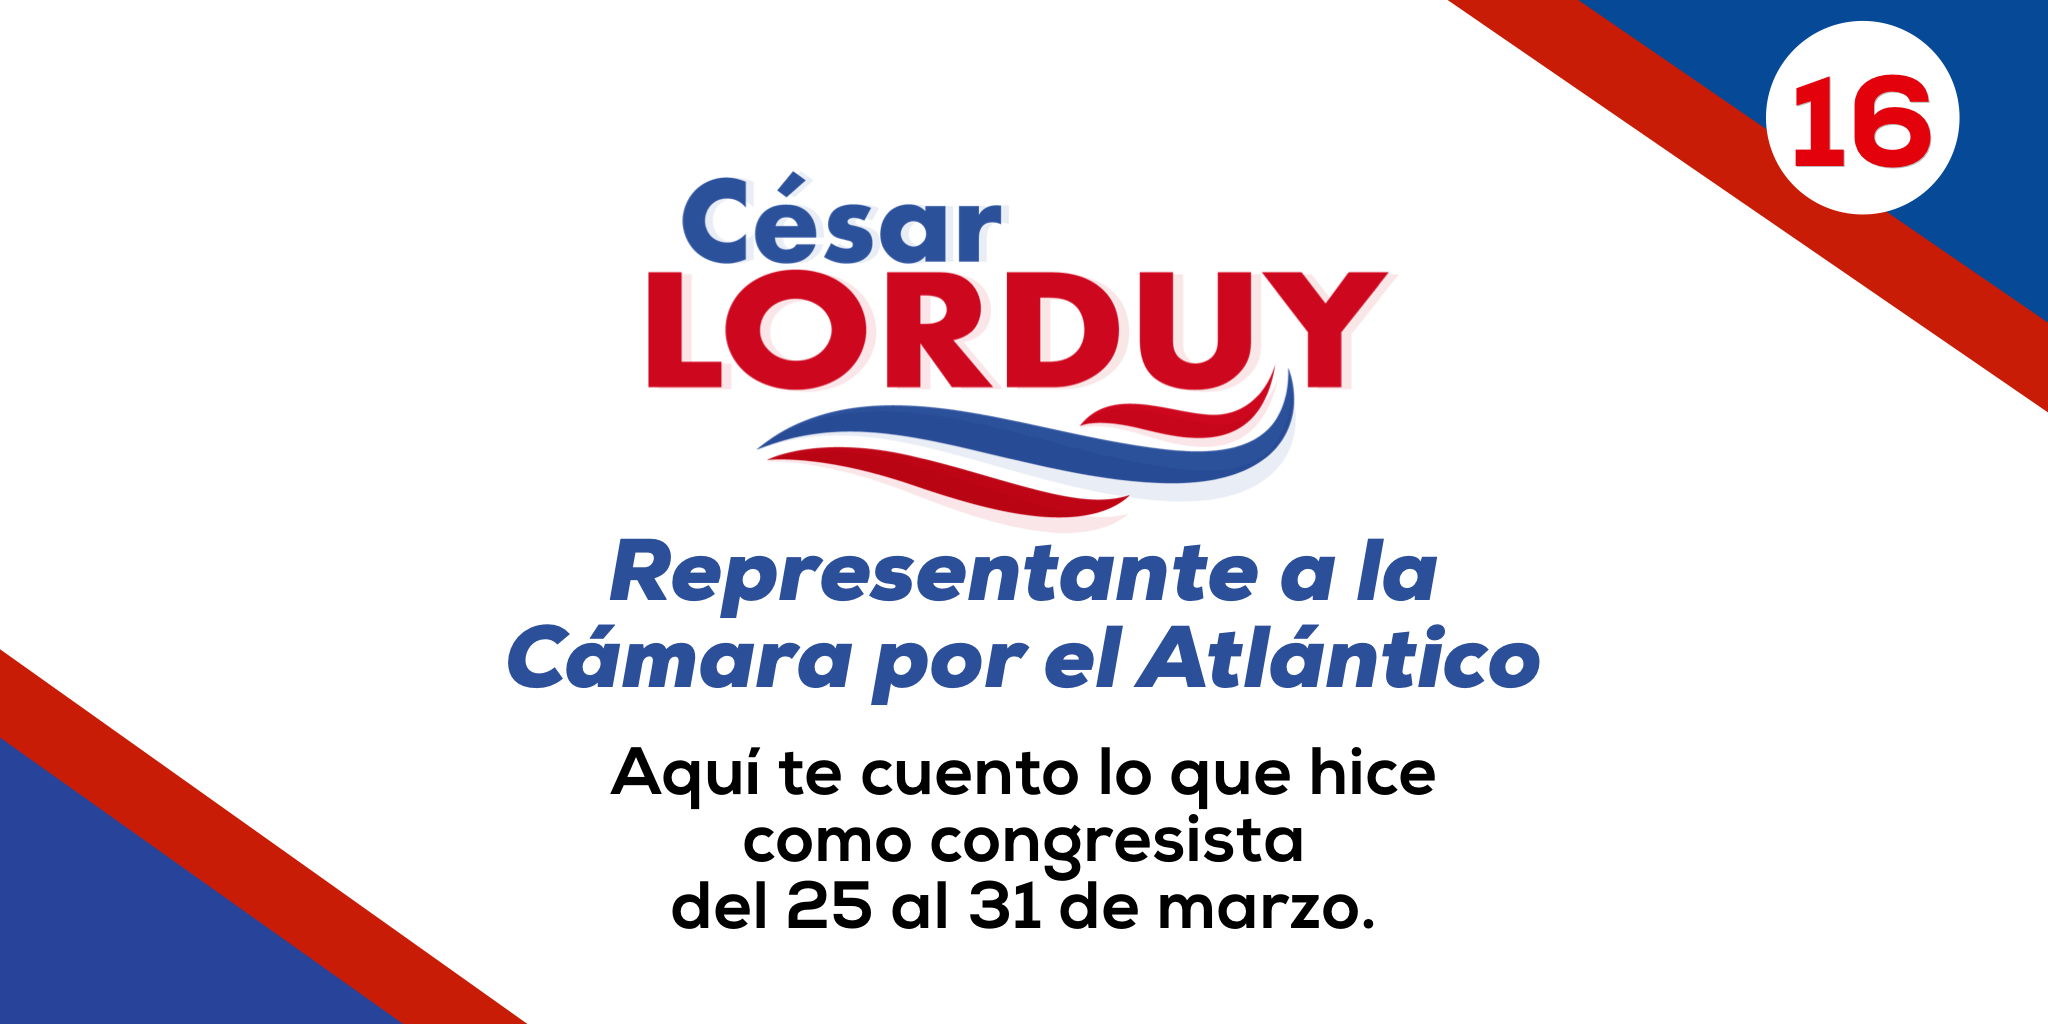 Informe de gestión No. 16 del Representante a la Cámara por el departamento del Atlántico, Cesar Lorduy 2